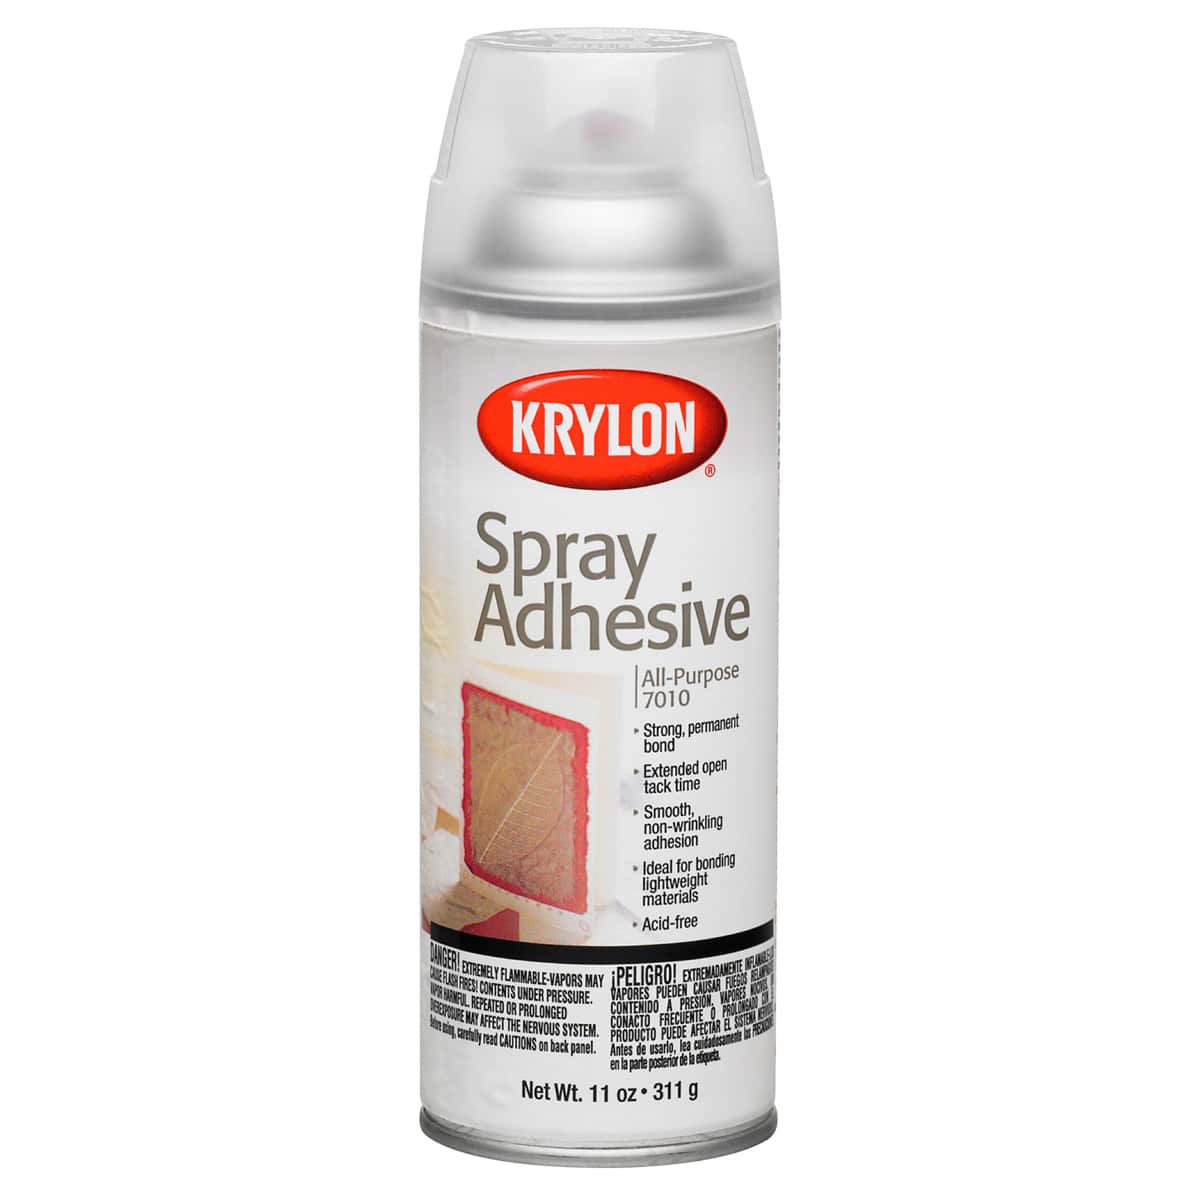 Spray Adhesive at